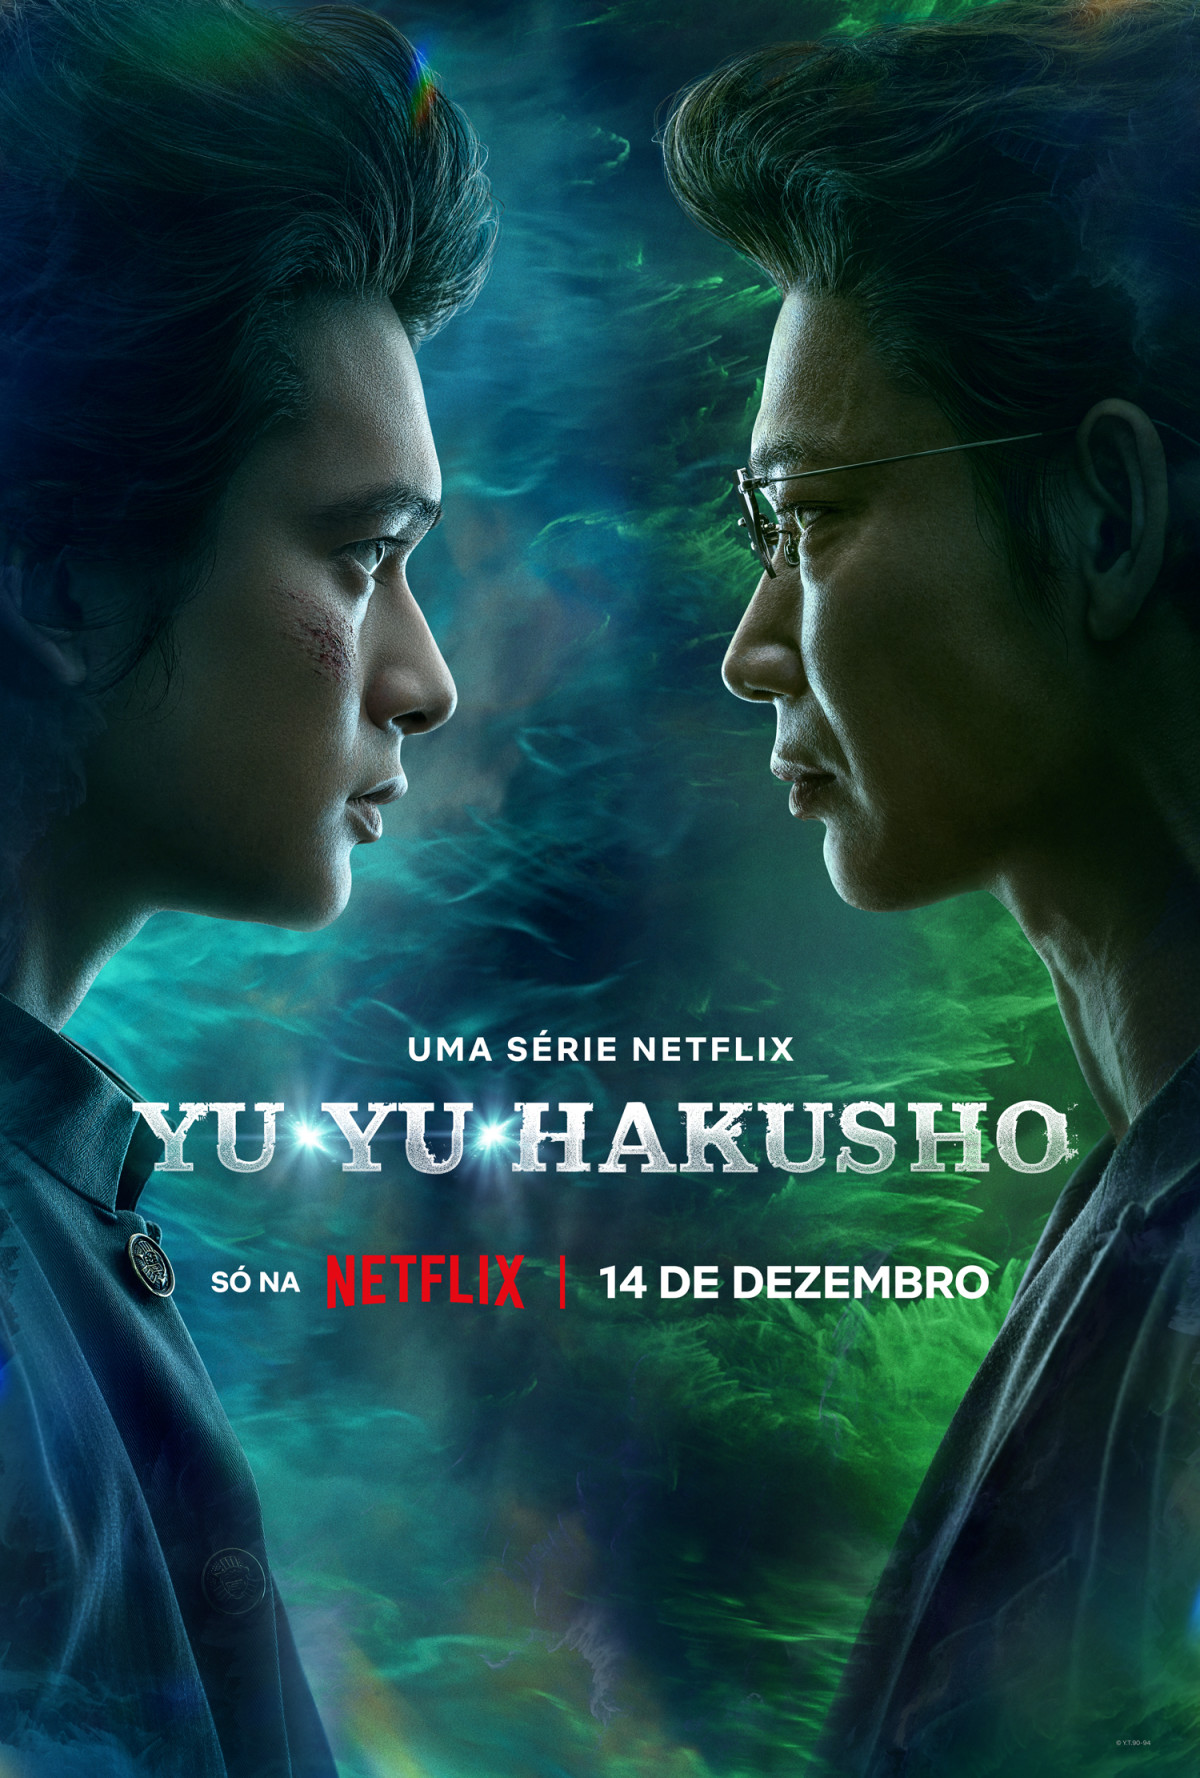 TRAILER COMPLETO E DUBLADO YU YU HAKUSHO 🔥 A Netflix acaba de divul